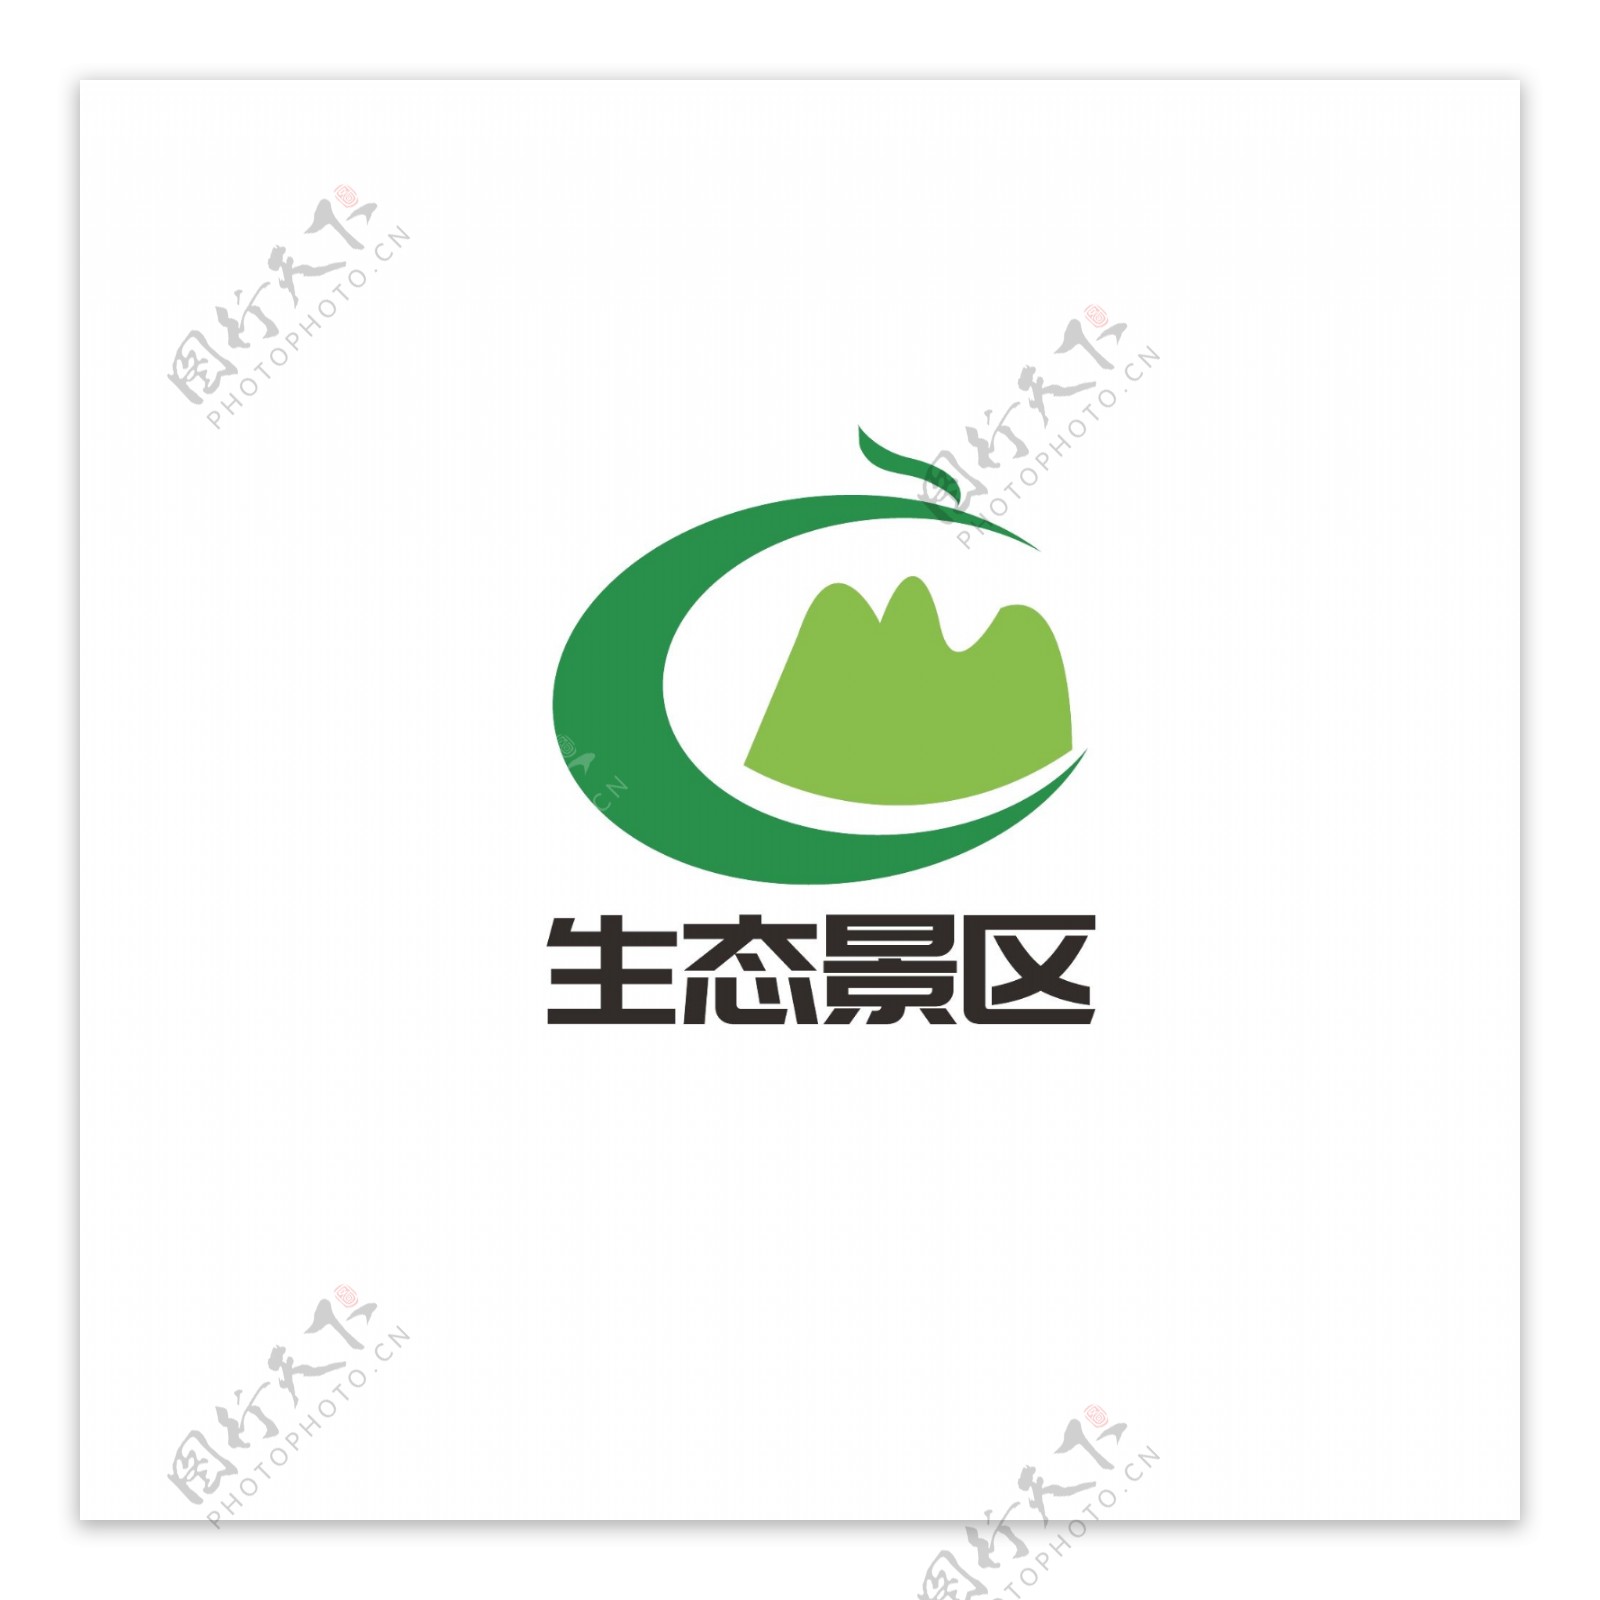 生态景区logo设计